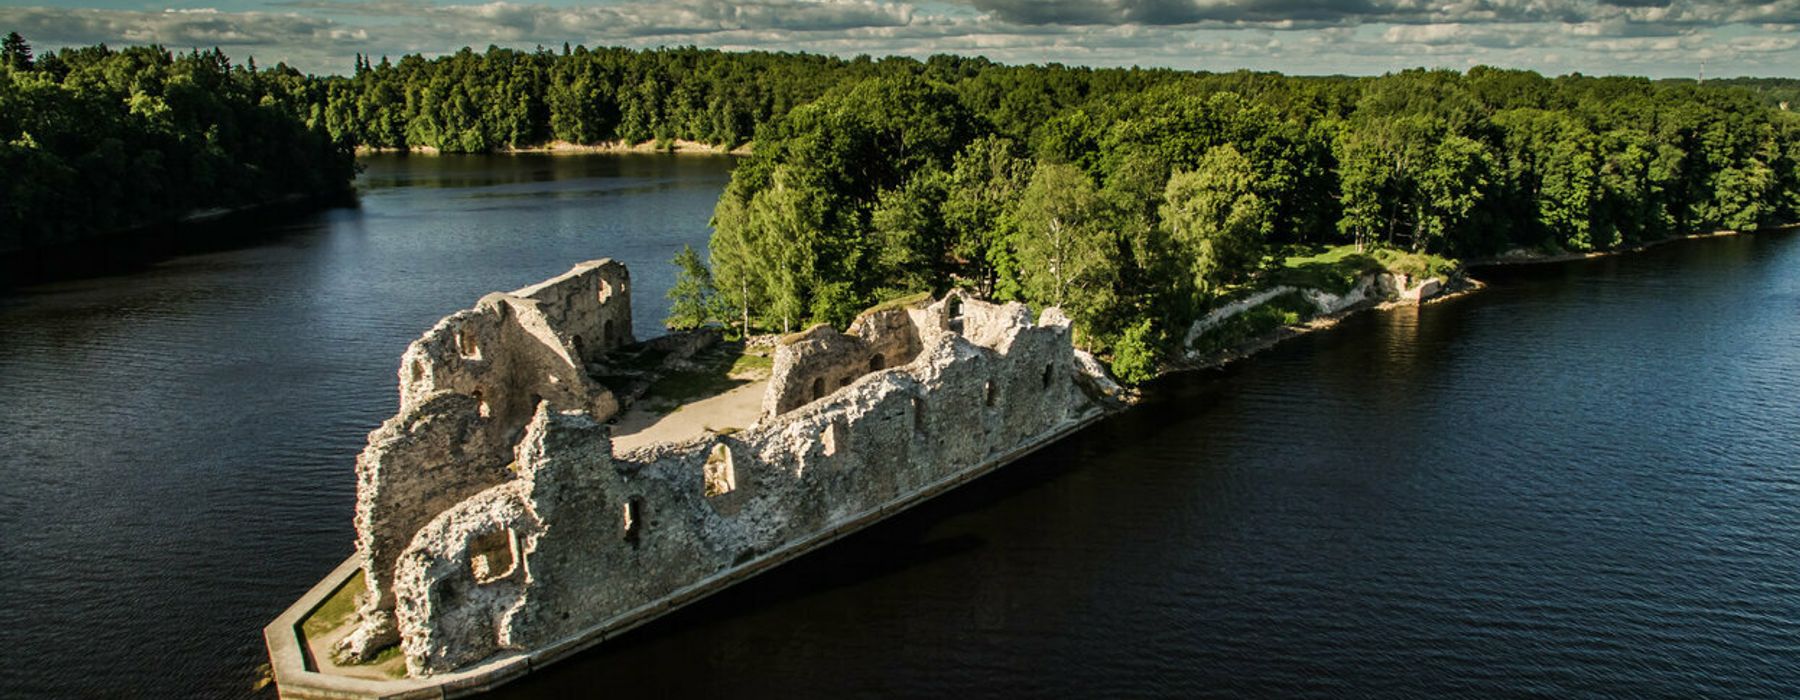 Kelionė į Latviją: Renavo dvaras – Salaspilis – vikingų laivas – Motor muziejus – Bauskės pilis – shitaki grybai